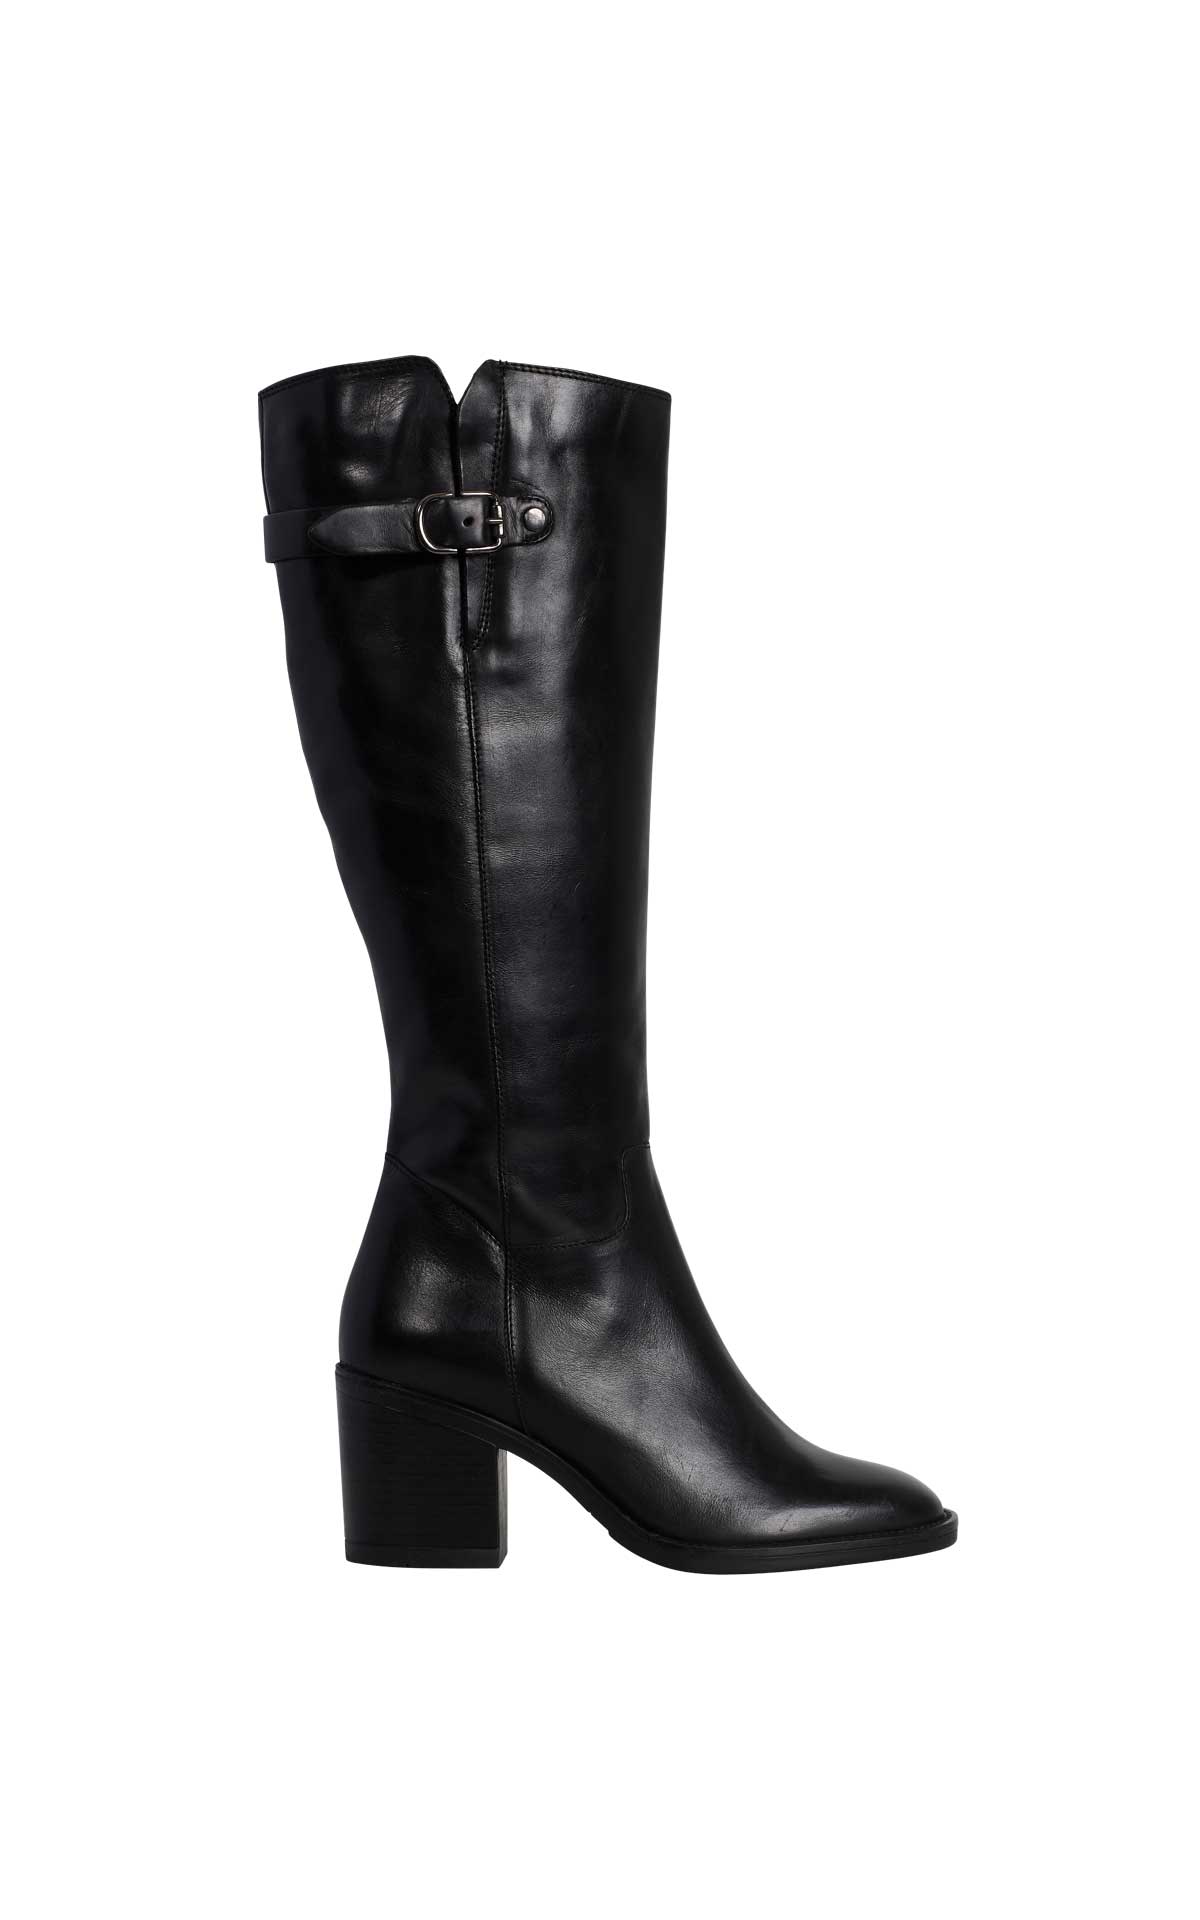 High heel black boots Clarks